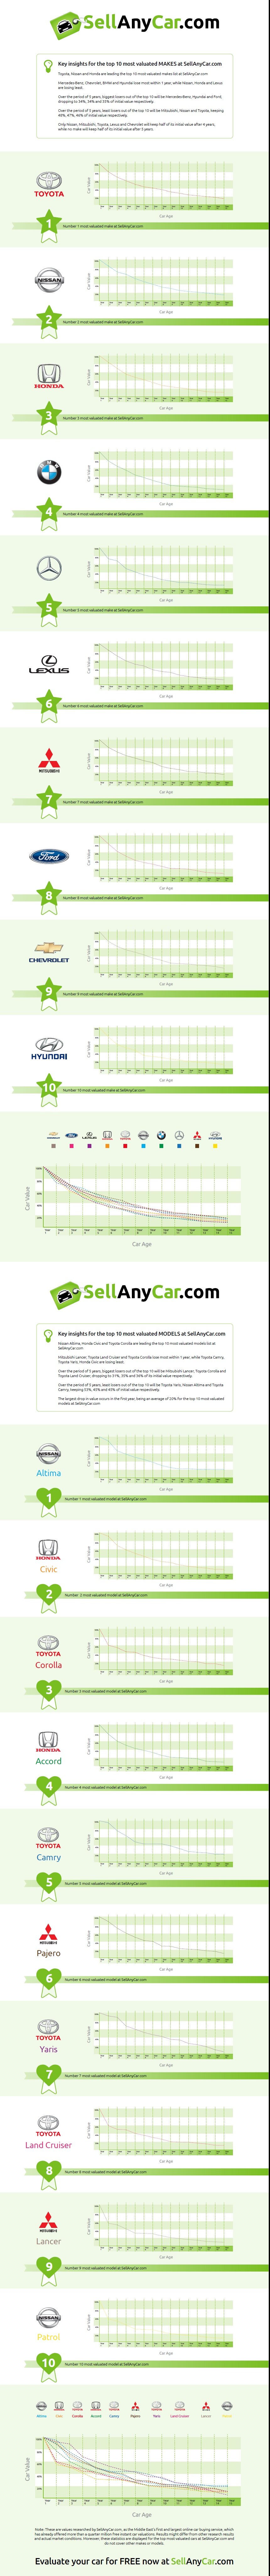 Sell any car